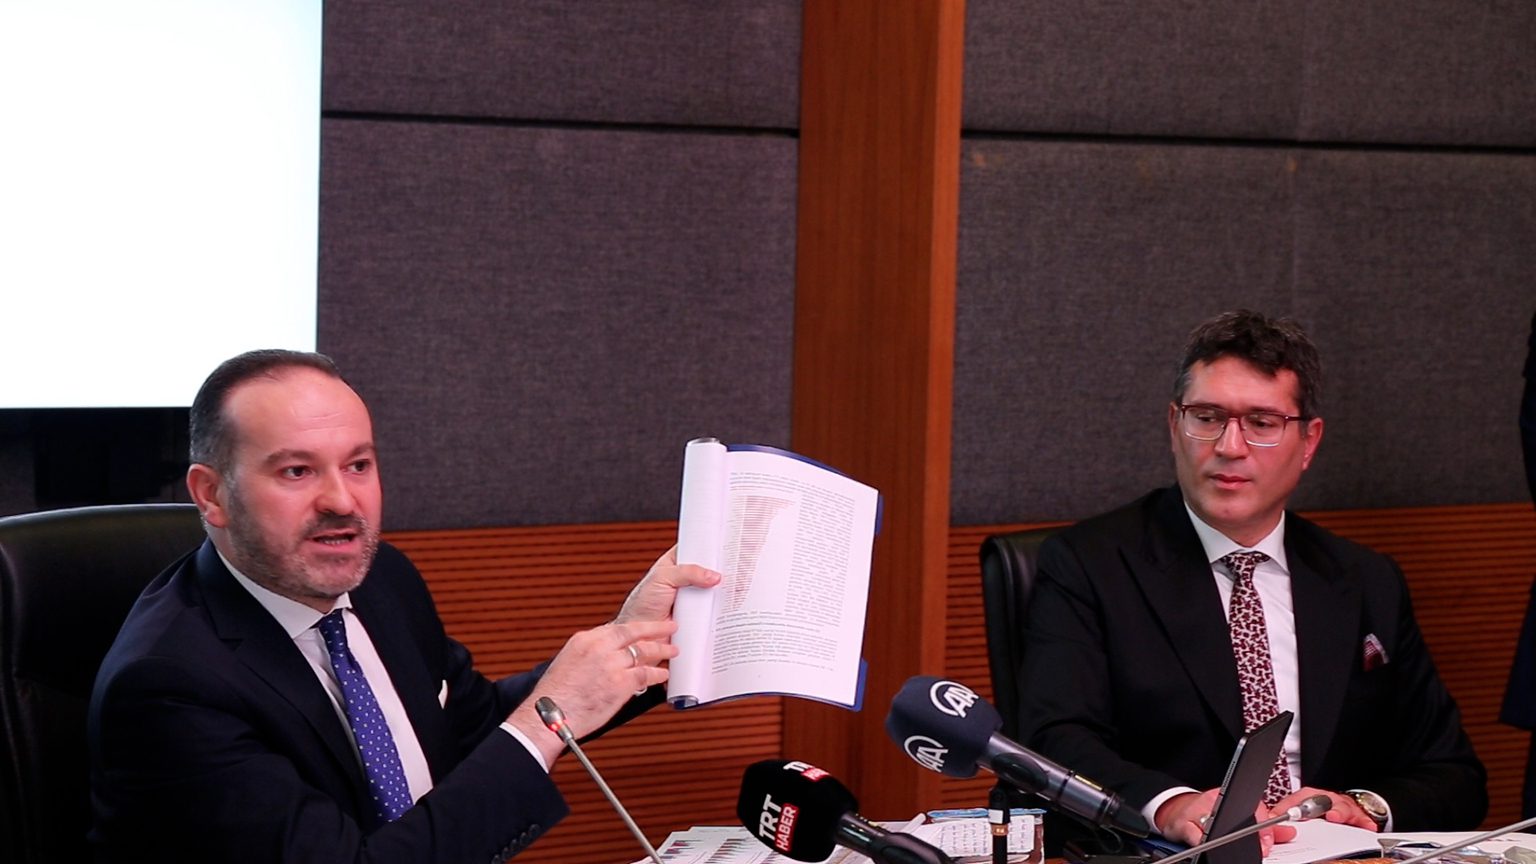 TRT eski genel müdürü İbrahim Eren, giderayak binin üzerinde anlaşma imzalamış